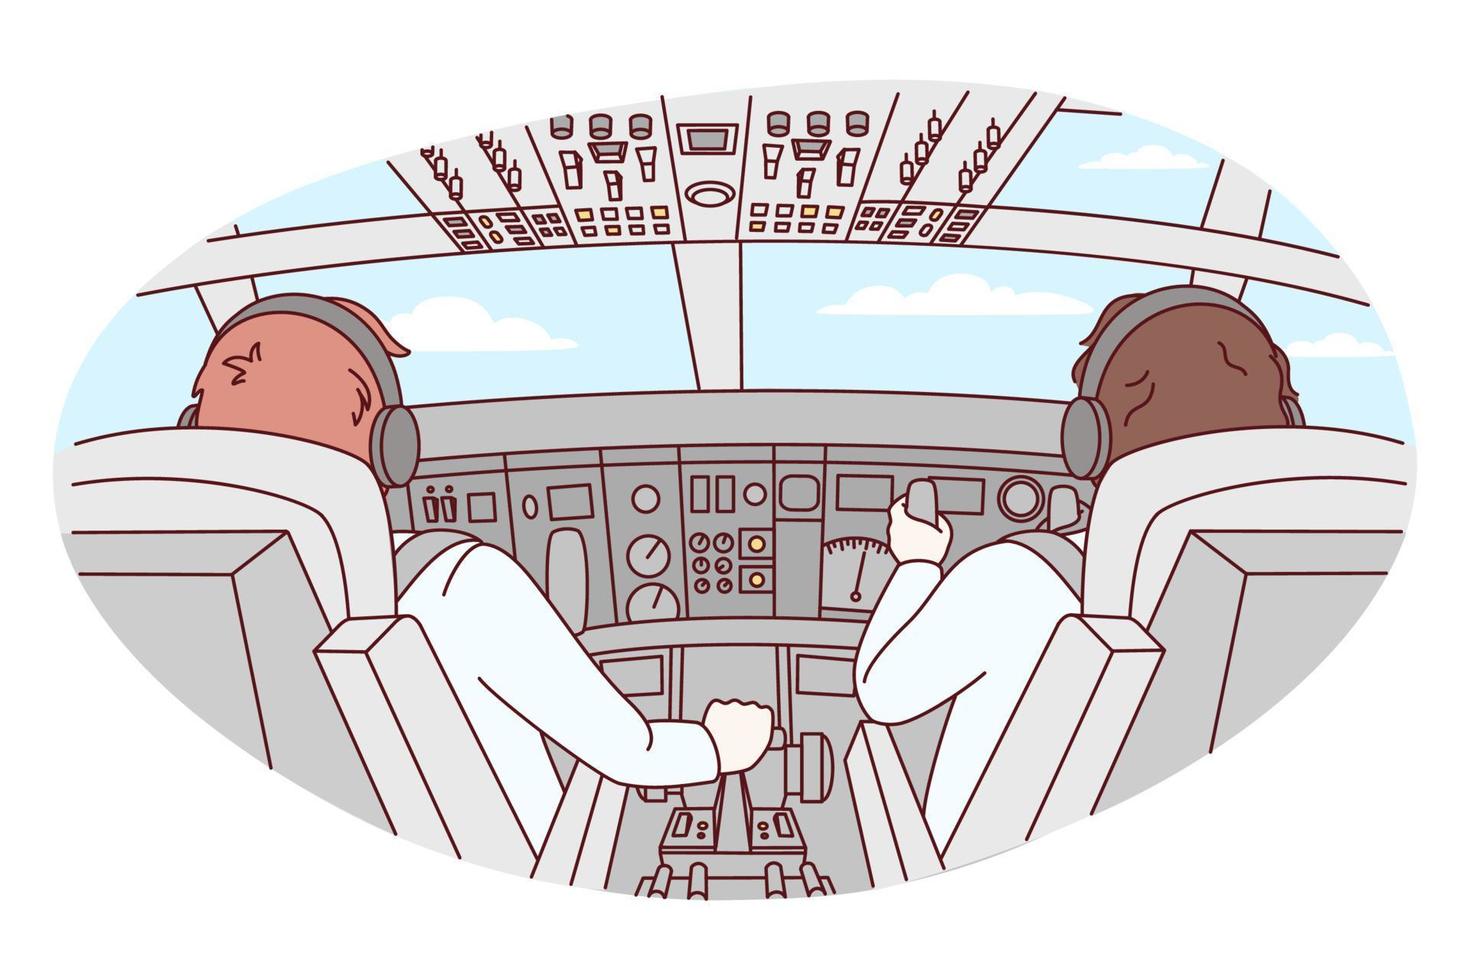 pilotos dentro cabine do avião durante voo. aeronave equipe técnica dentro frente do plantar. aviação e vôo. vetor ilustração.